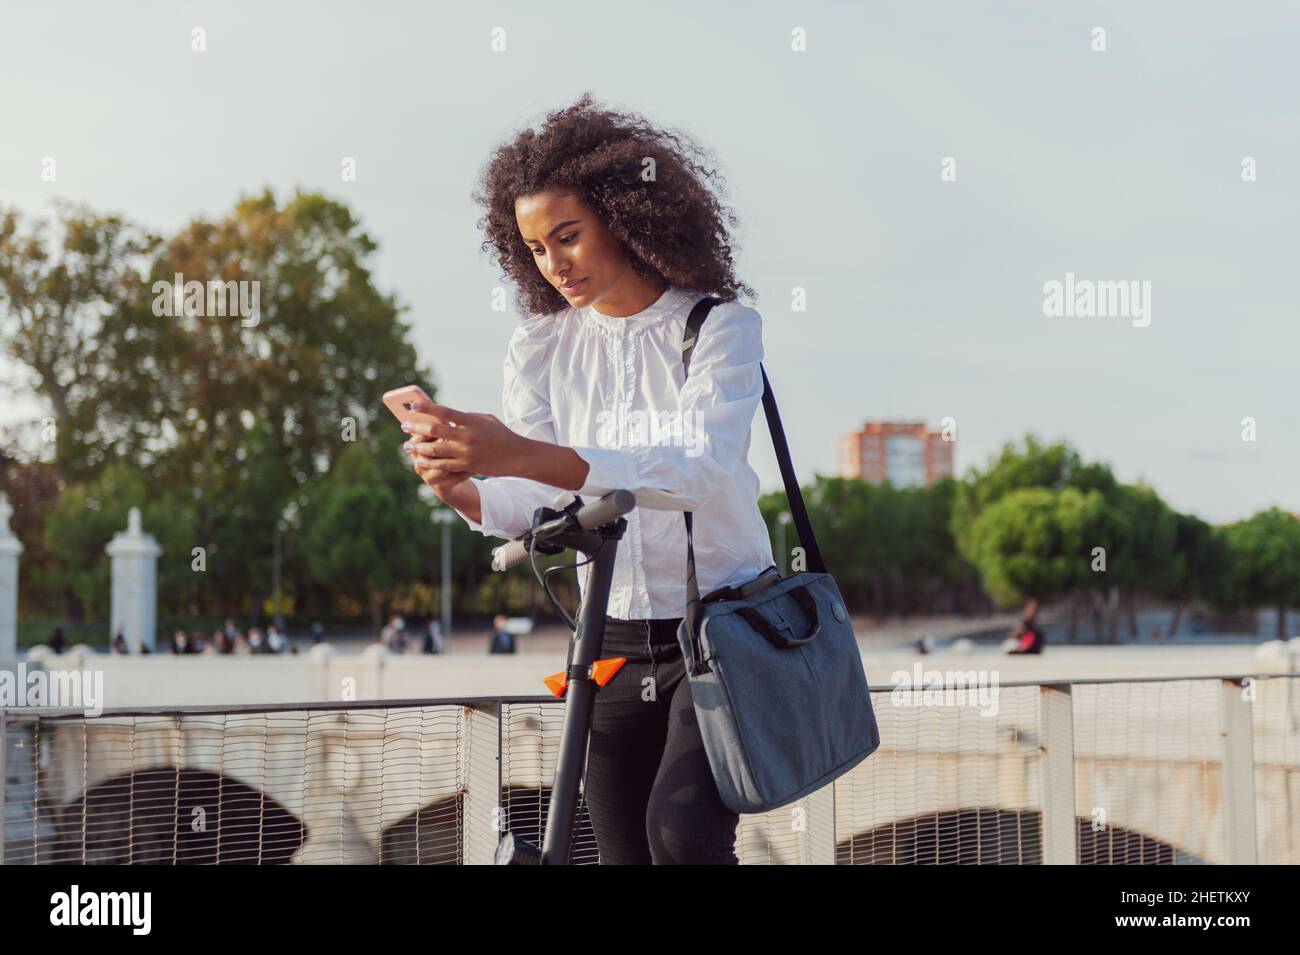 Junge Frau lädt die App, um den Elektroroller zu verwenden In der Stadt Straße gesund Lebensstil nachhaltigen Lebensstil Stockfoto